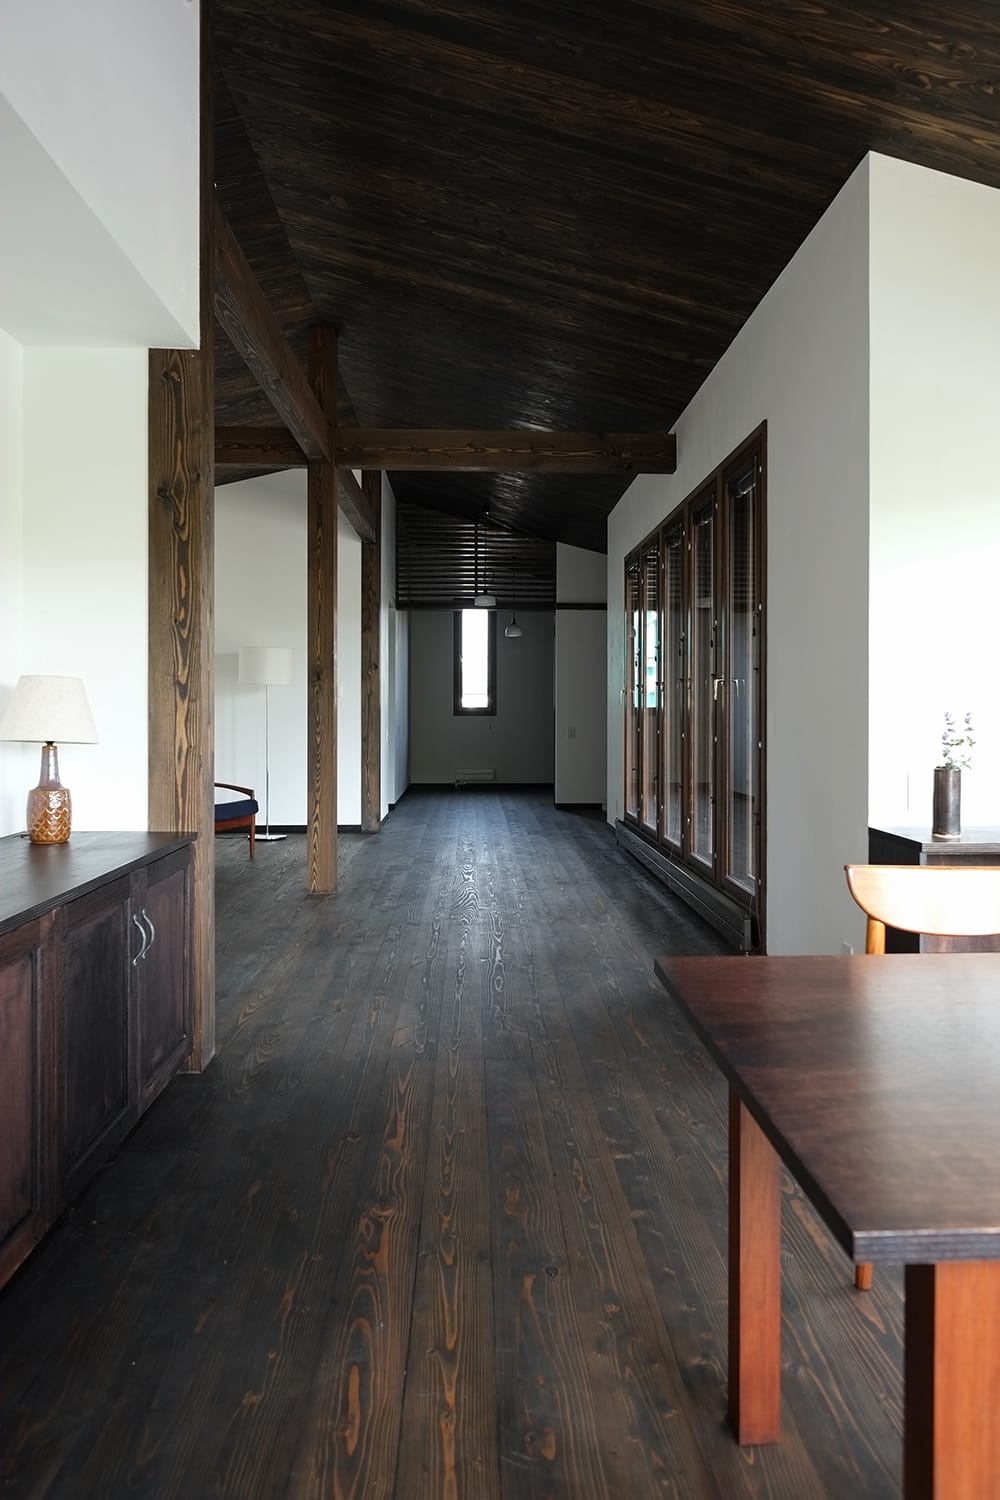 カラマツ板張りの天井と床の室内 長い廊下